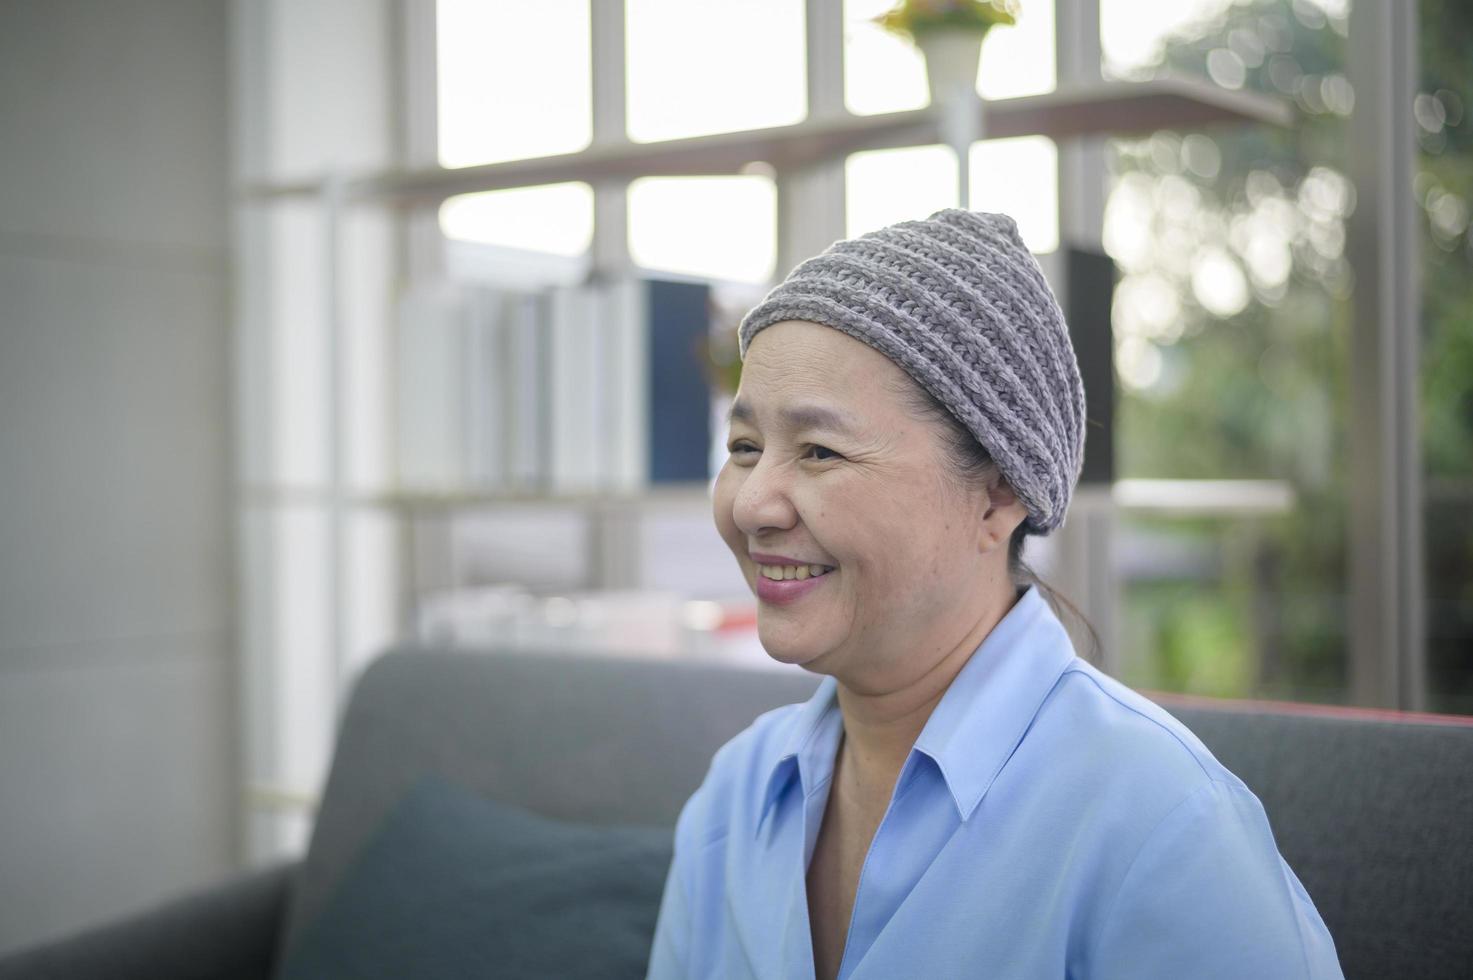 headshot av leende cancer kvinna i hemmet foto